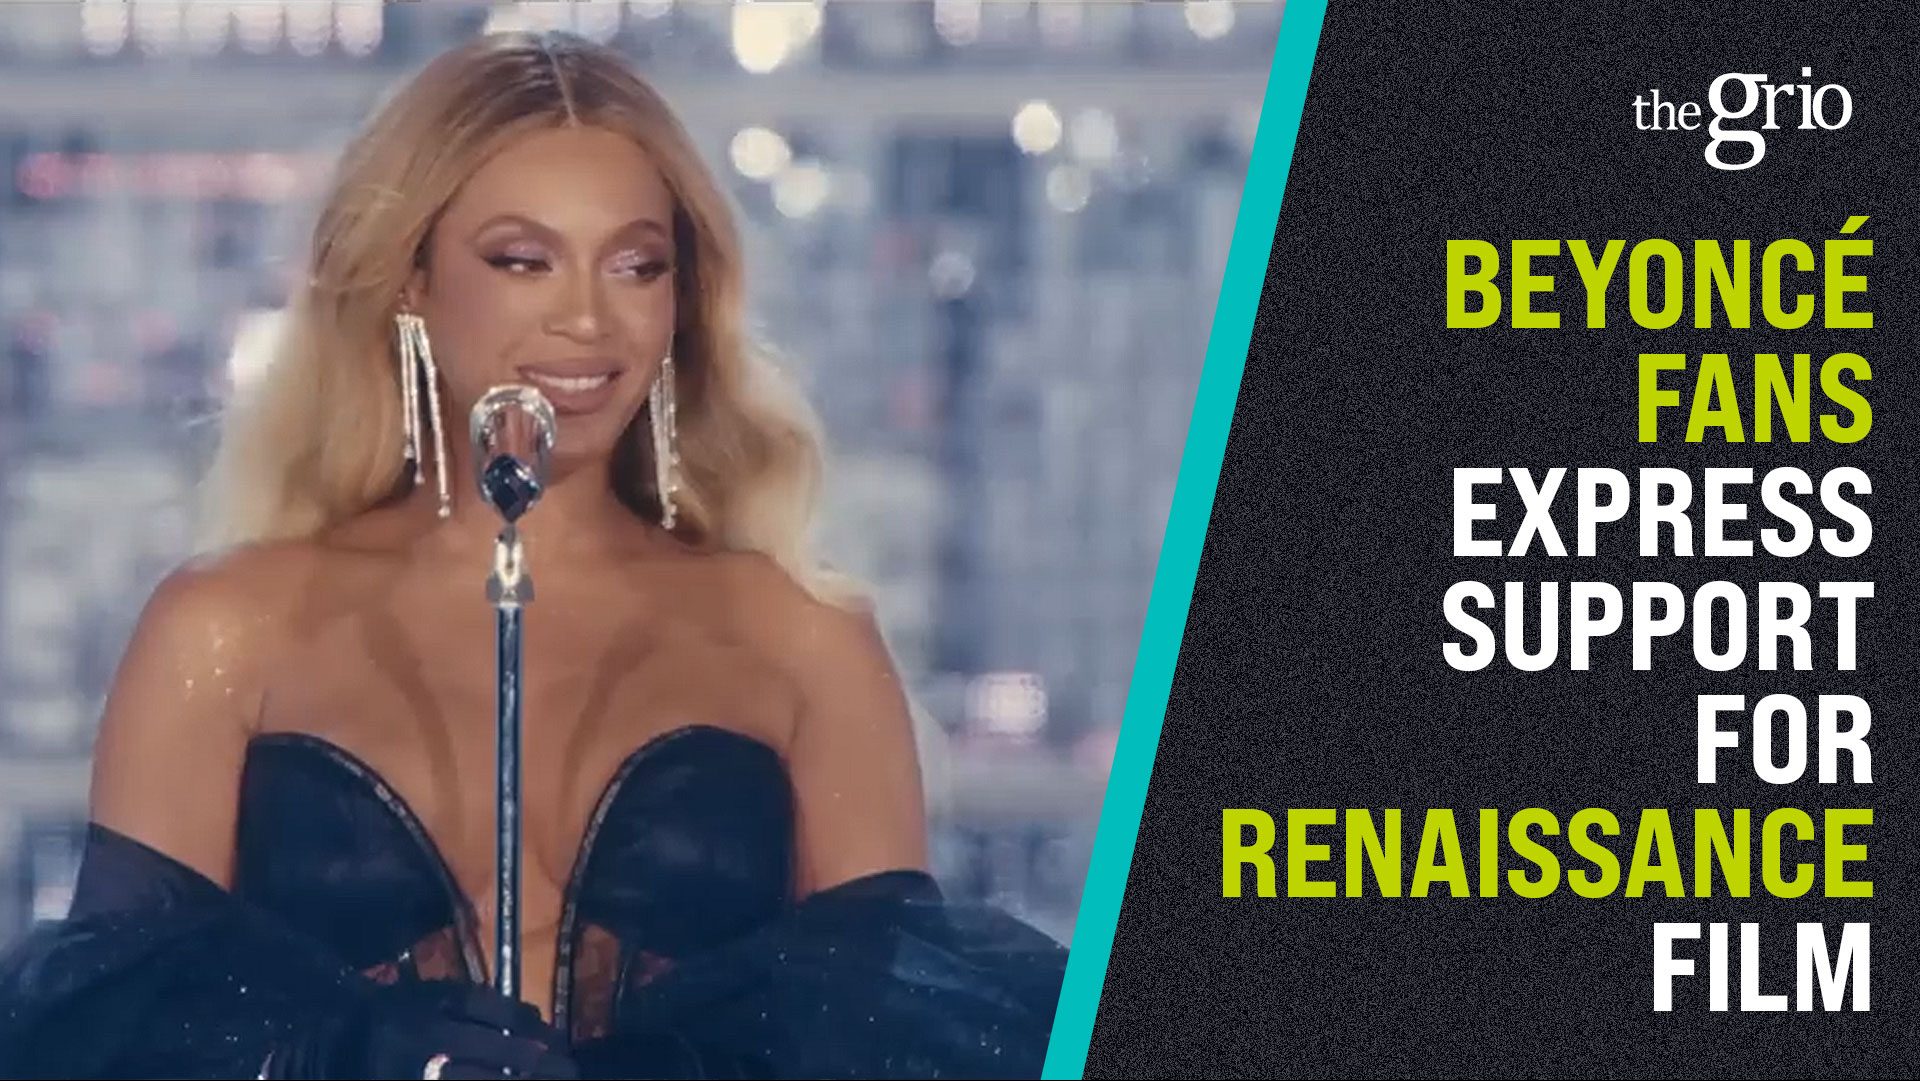 Watch: Beyoncé fans on Renaissance tour and film